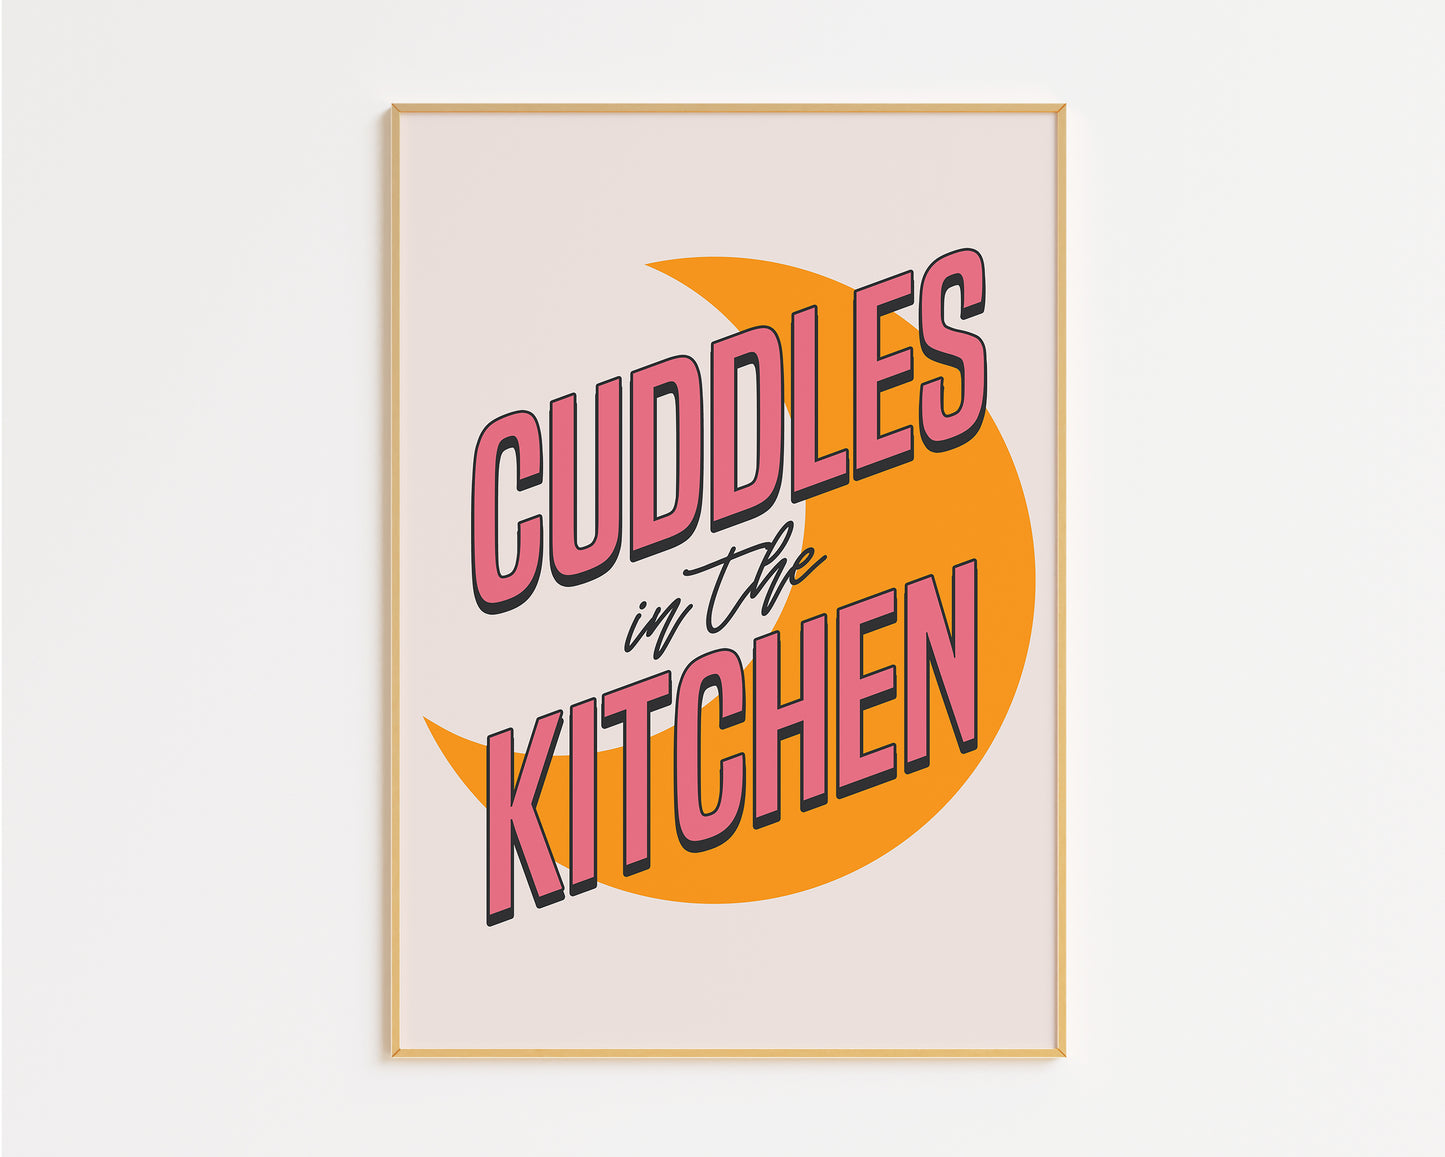 Cuddles In The Kitchen Print